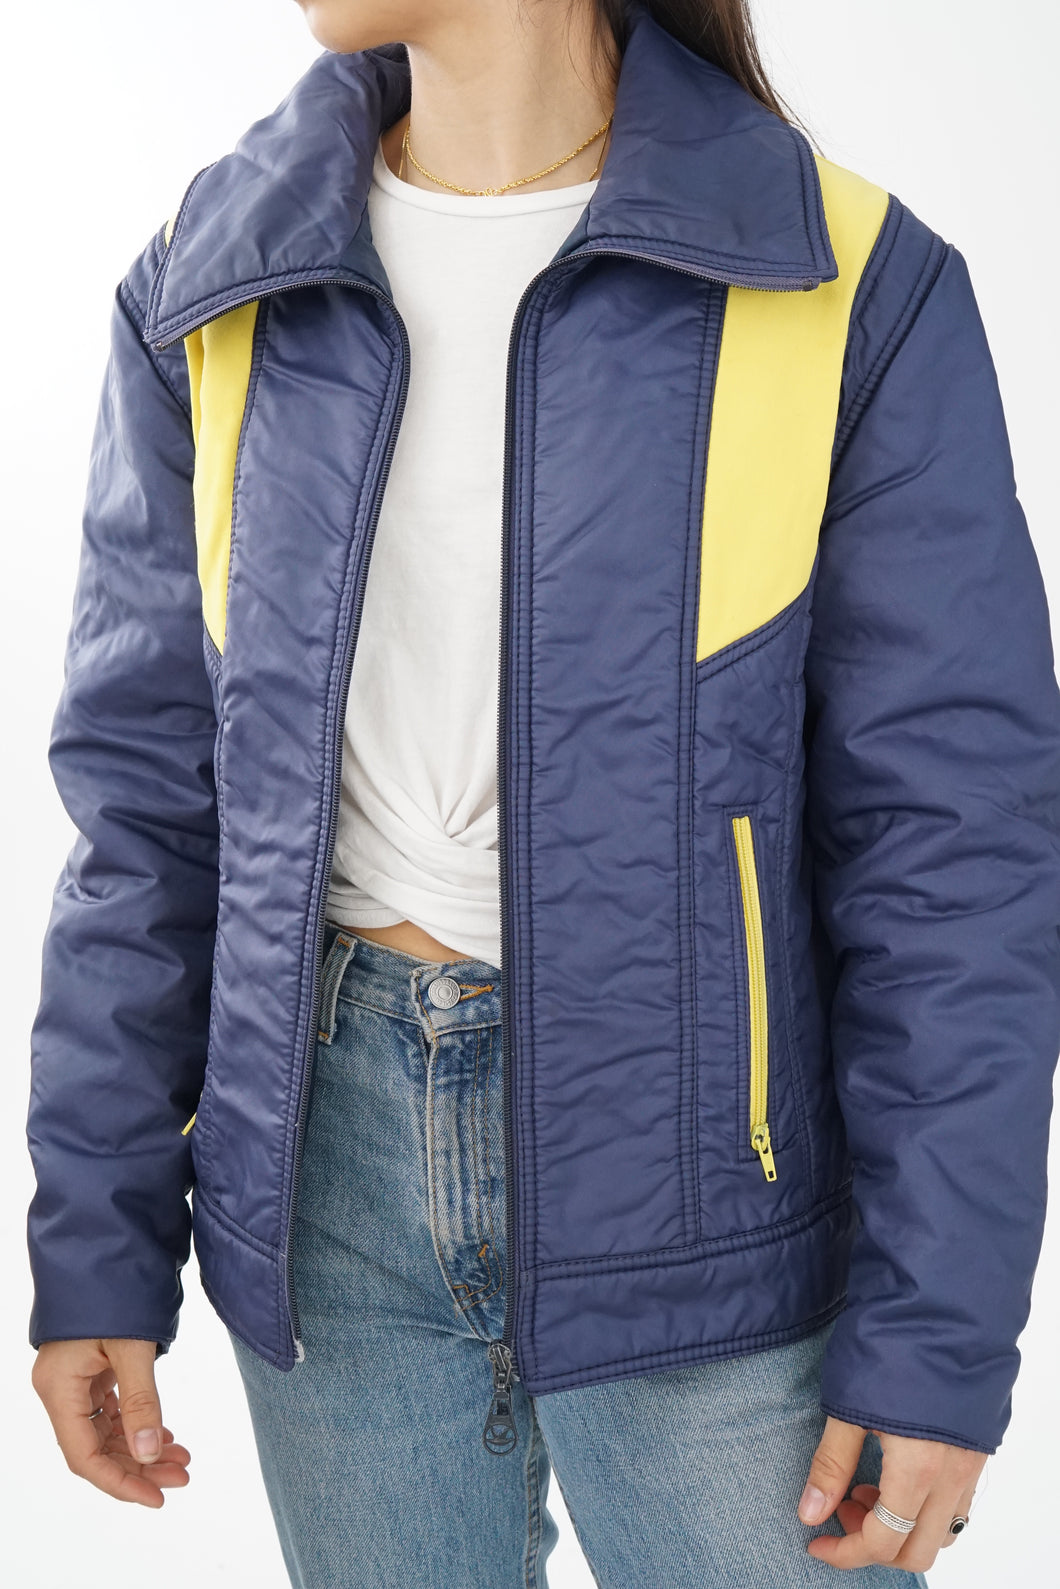 Manteau léger vintage 70s Pedigree du Canada bleu et jaune unisex M-L